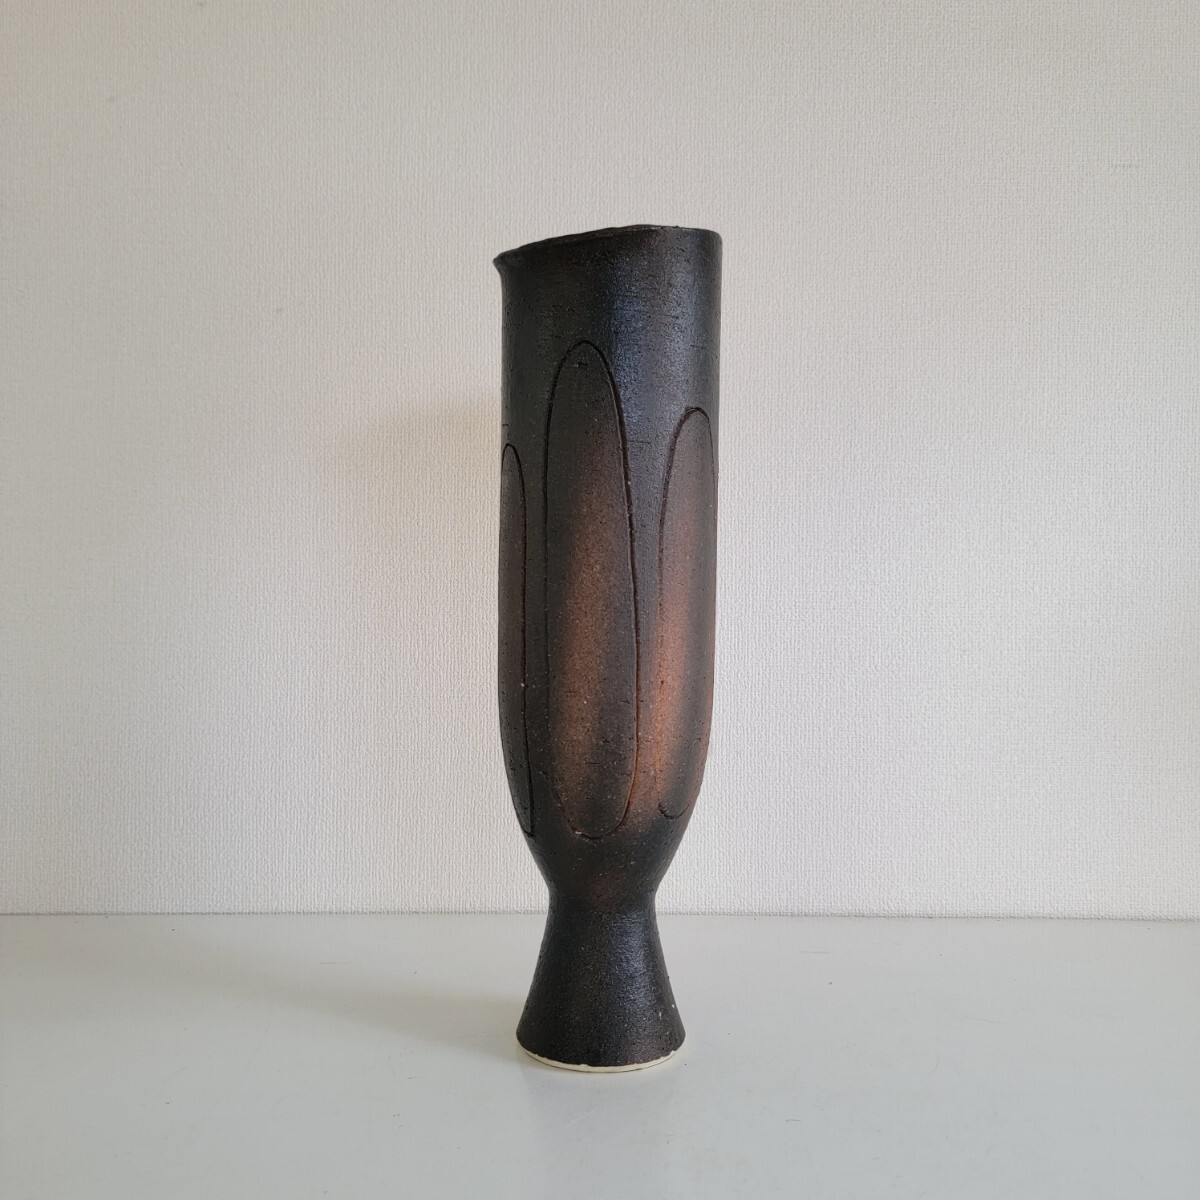 三菱 華道師範所蔵品 Japanese Vintage Flower Vase モダン 北欧 ヴィンテージ デザイン フラワーベース 花瓶 花器 インテリア 1725Vの画像1